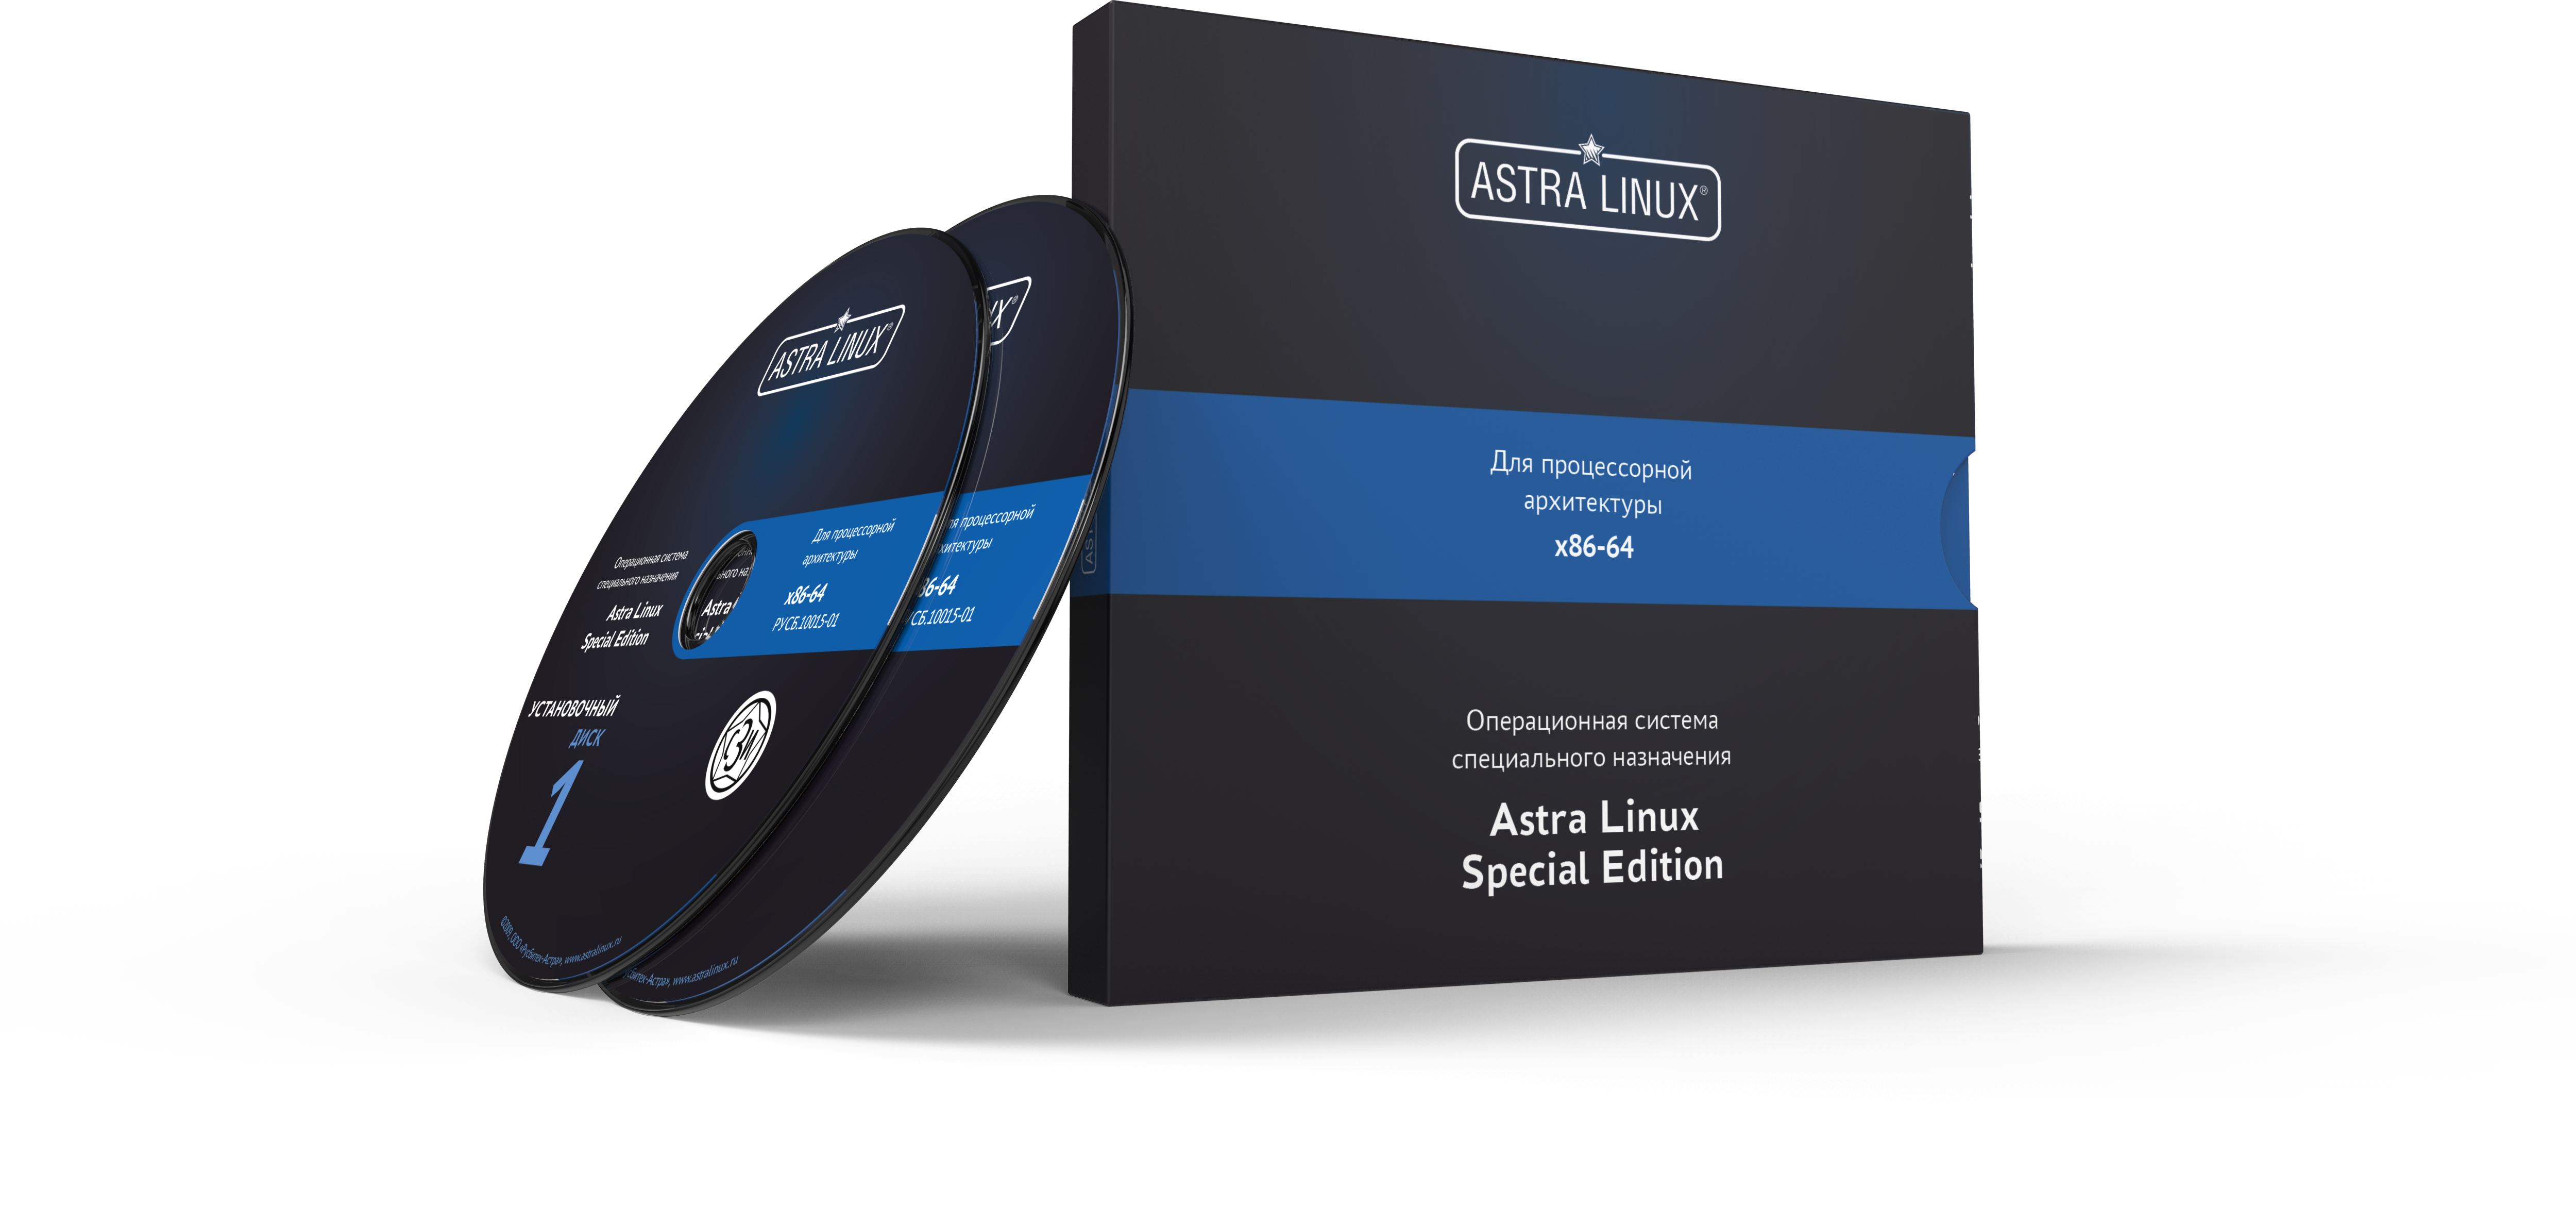 Astra Linux Special Edition 1.7 - Воронеж, РУСБ.10015-01 (ФСТЭК), OEM, без огр. срока, ТП "Привилегированная" 24 мес.